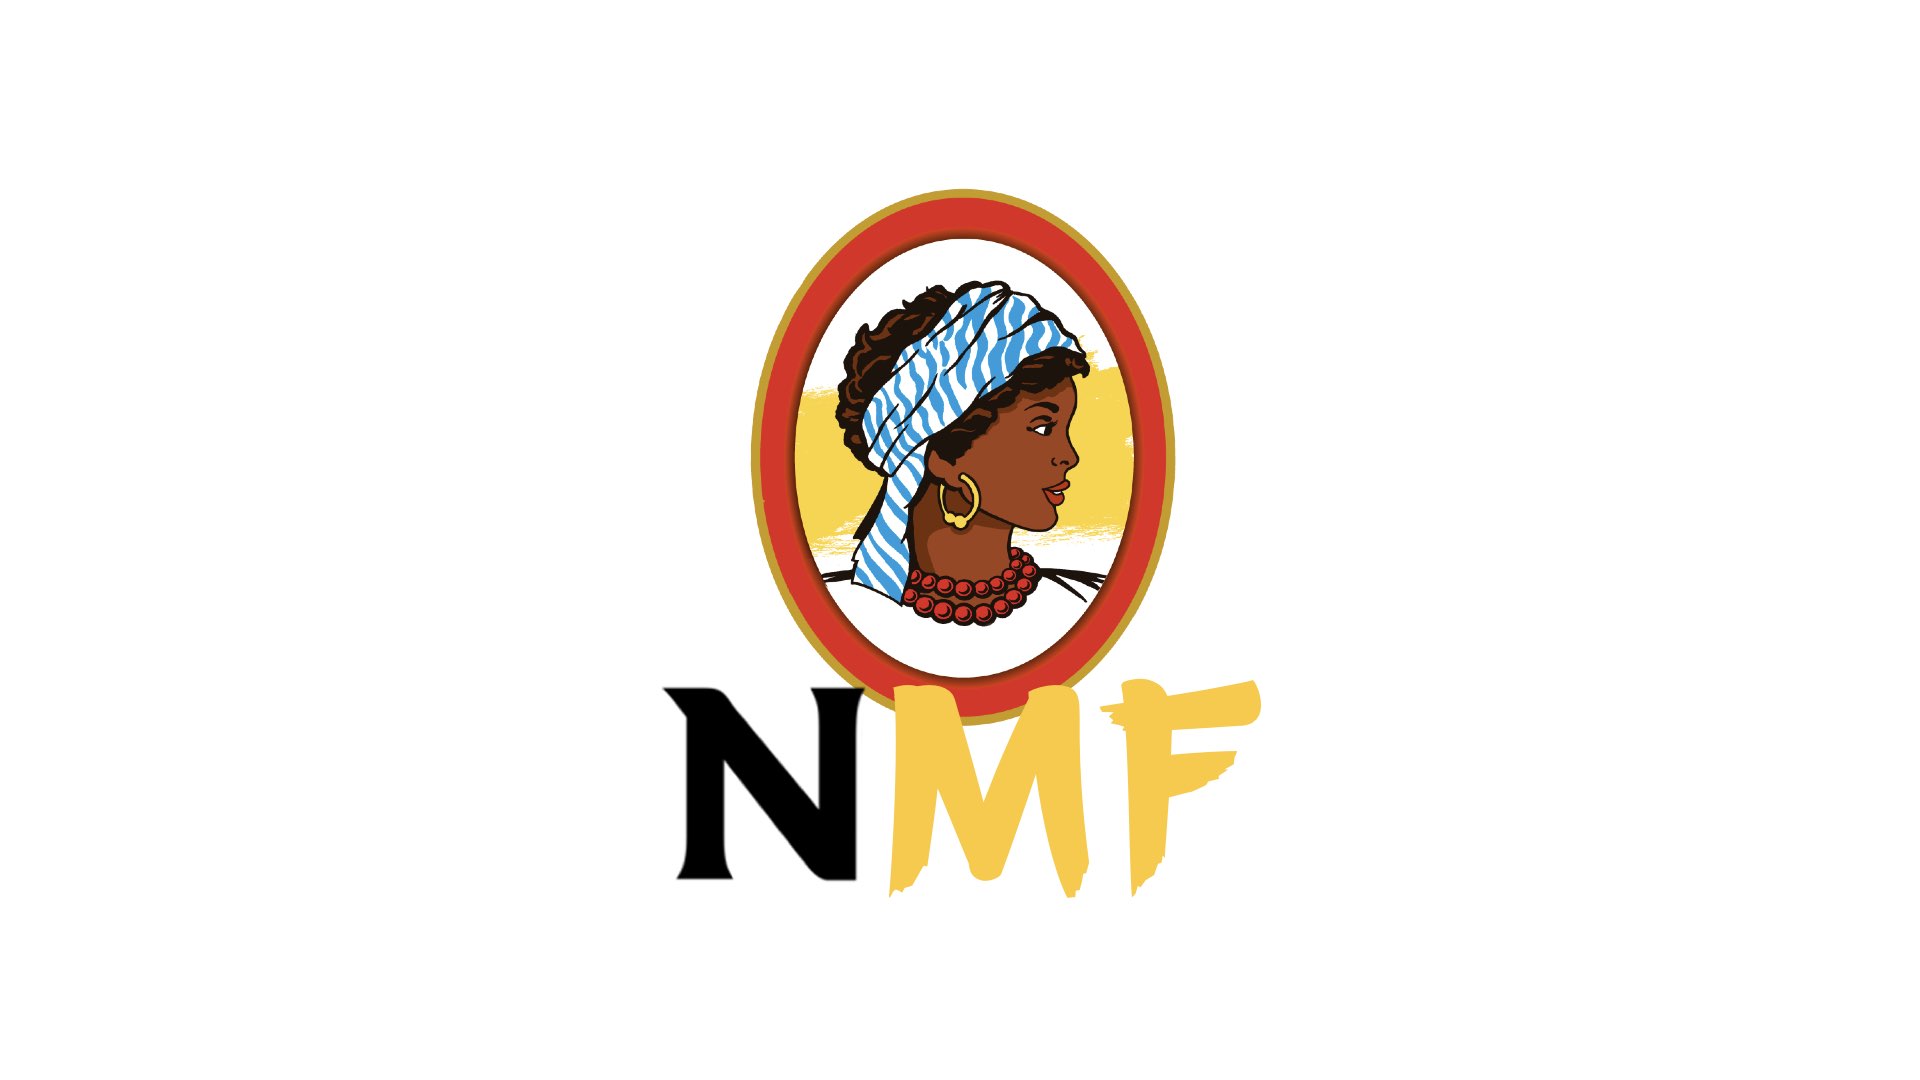 NMF